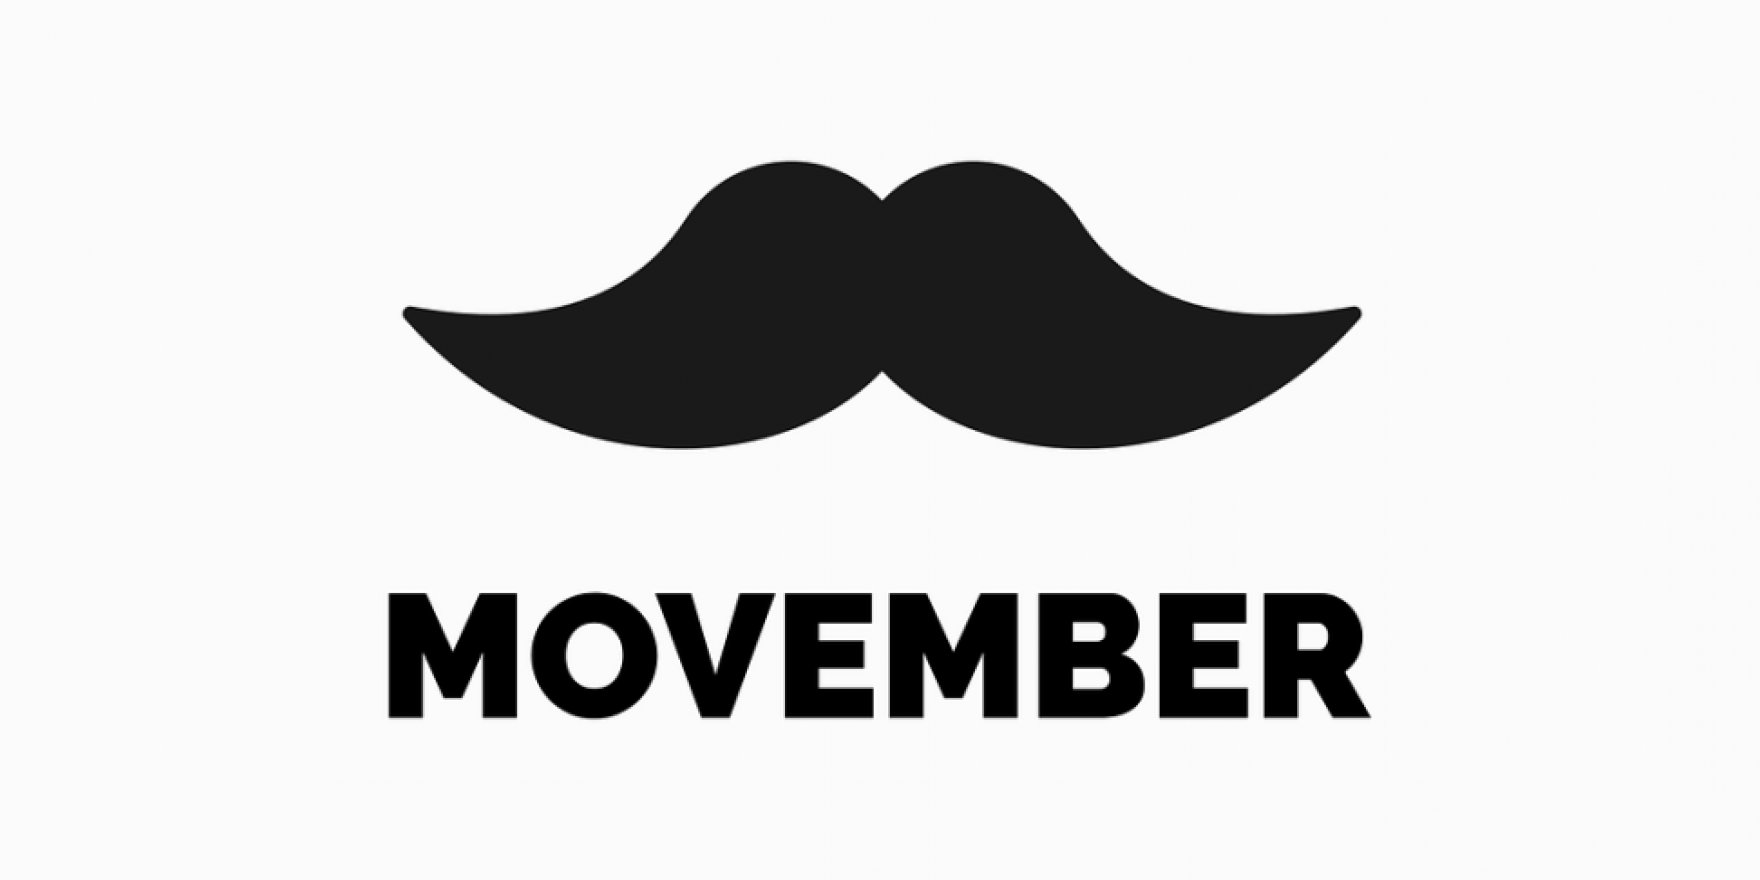 Jak listopada to... Wąsopad. Wspieramy Movember!